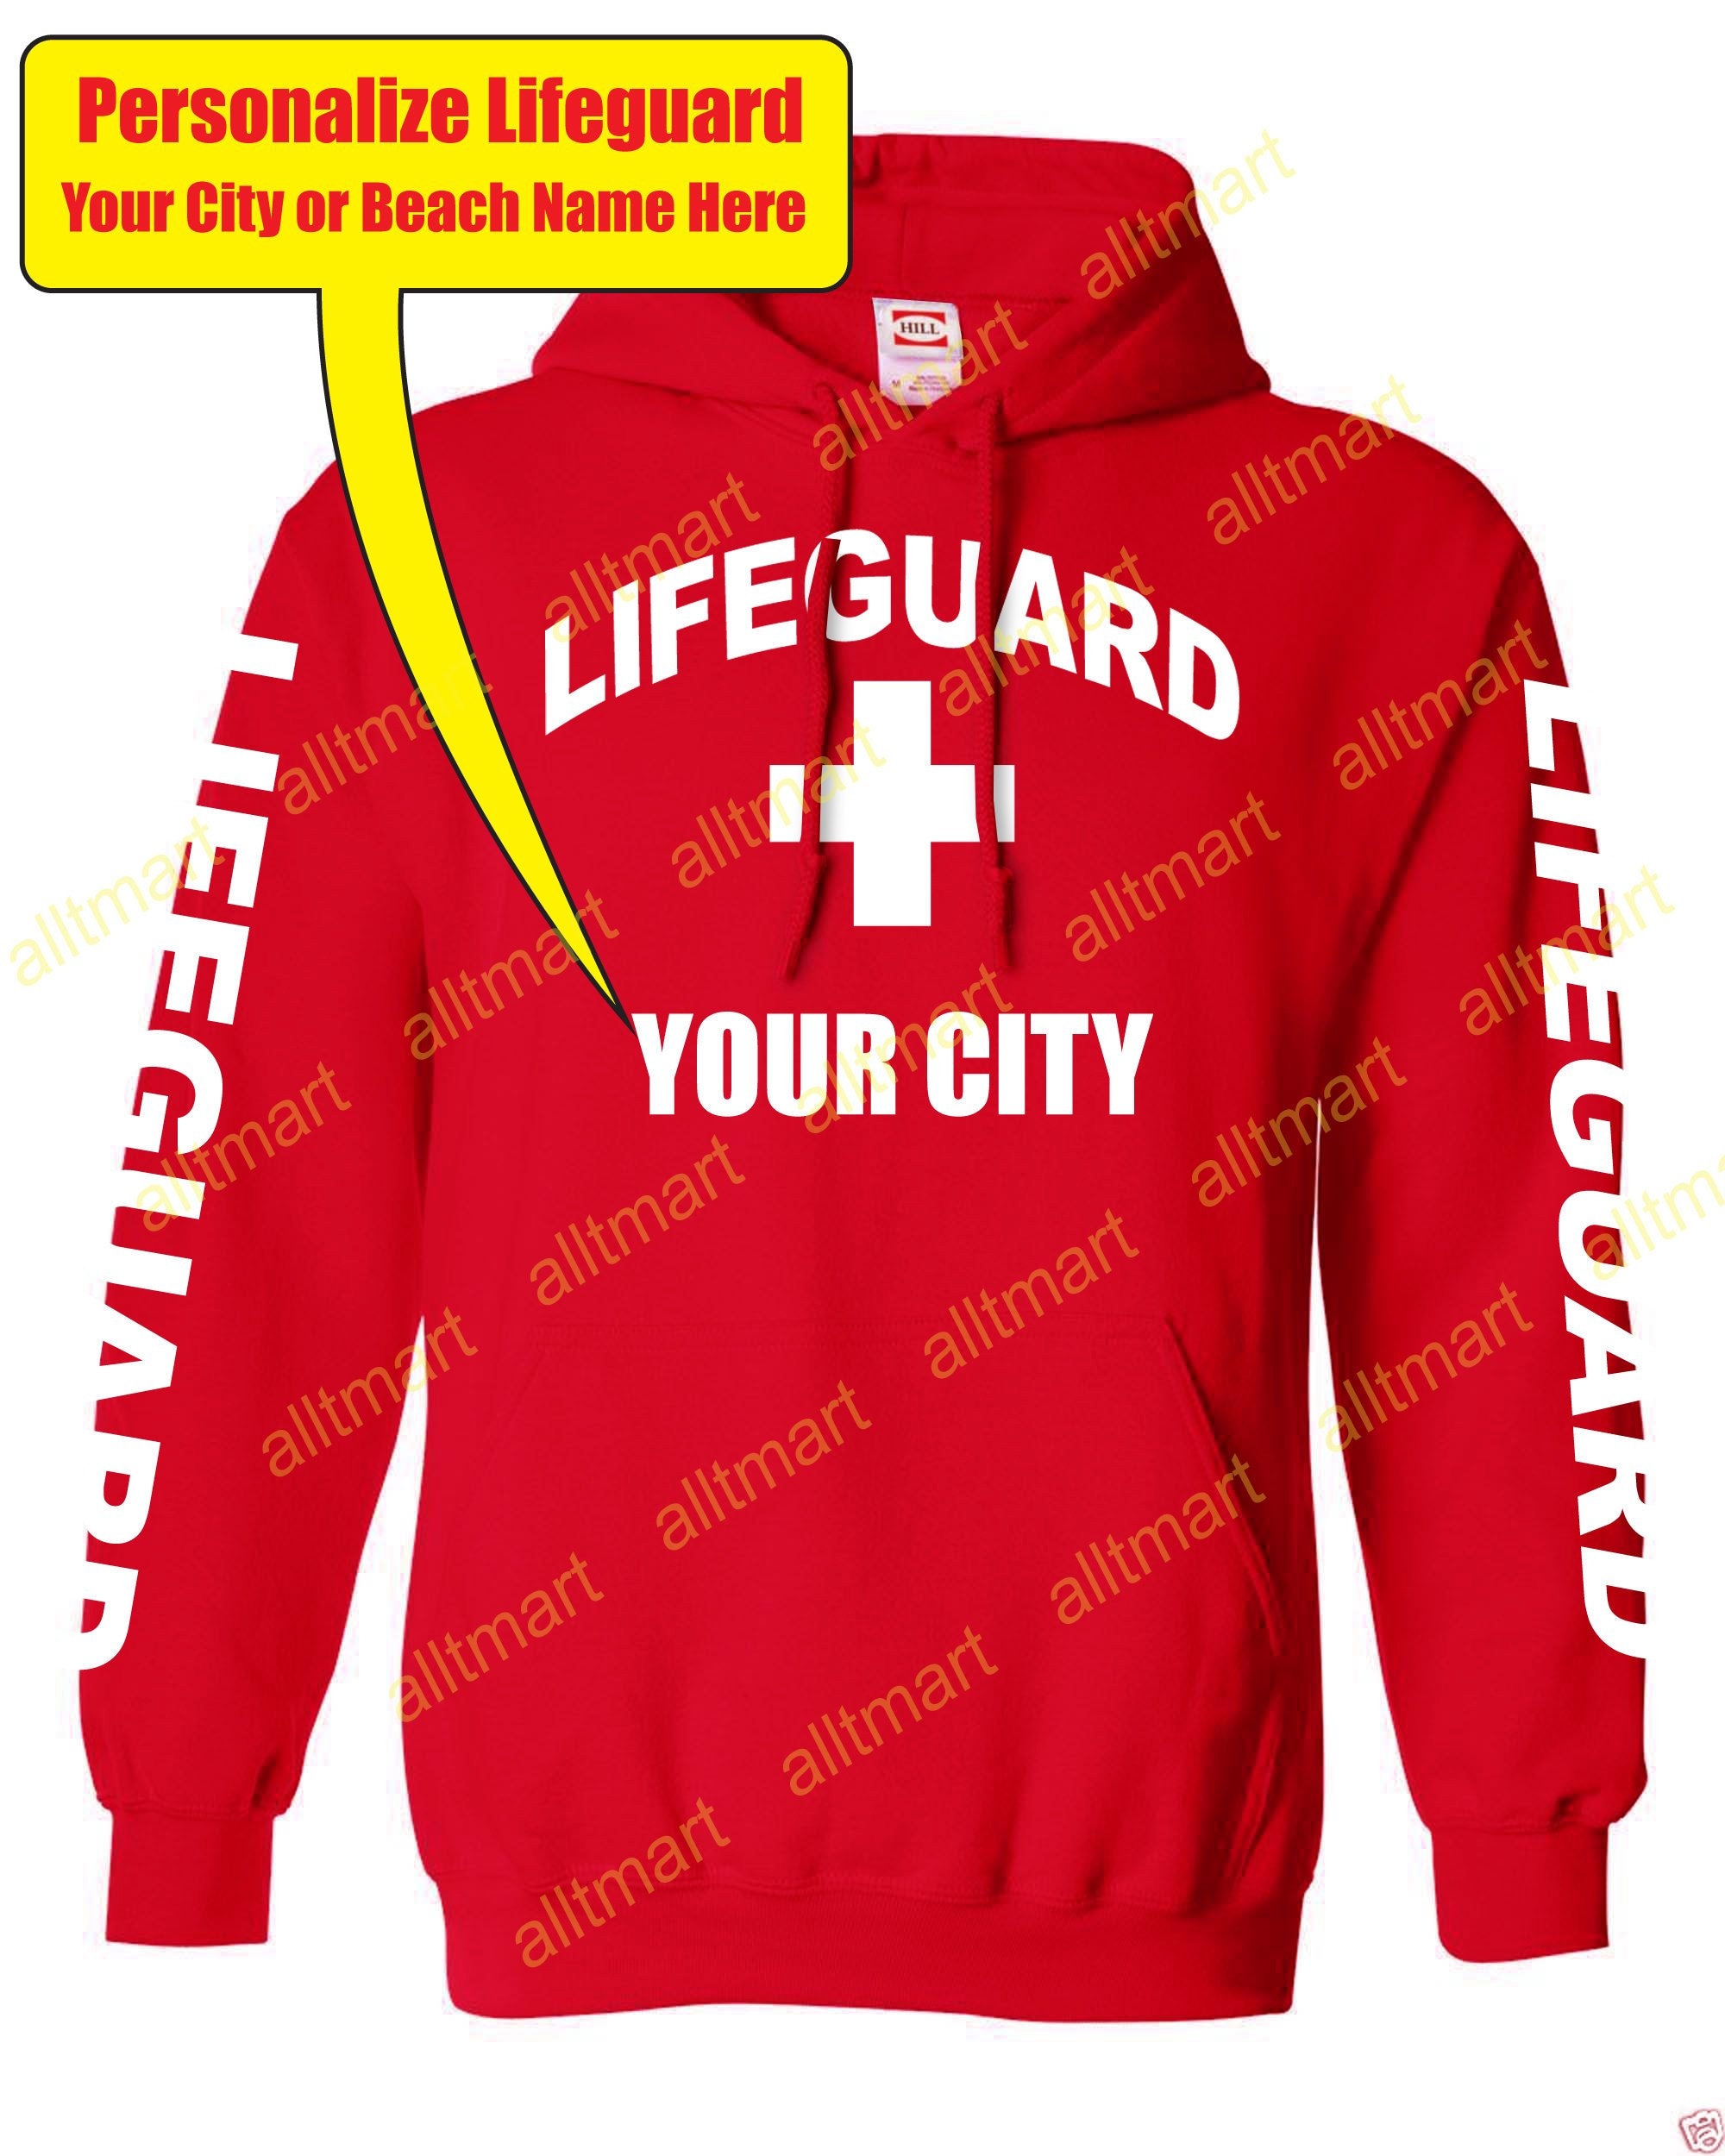 Men's LIFEGUARD hoodie. 